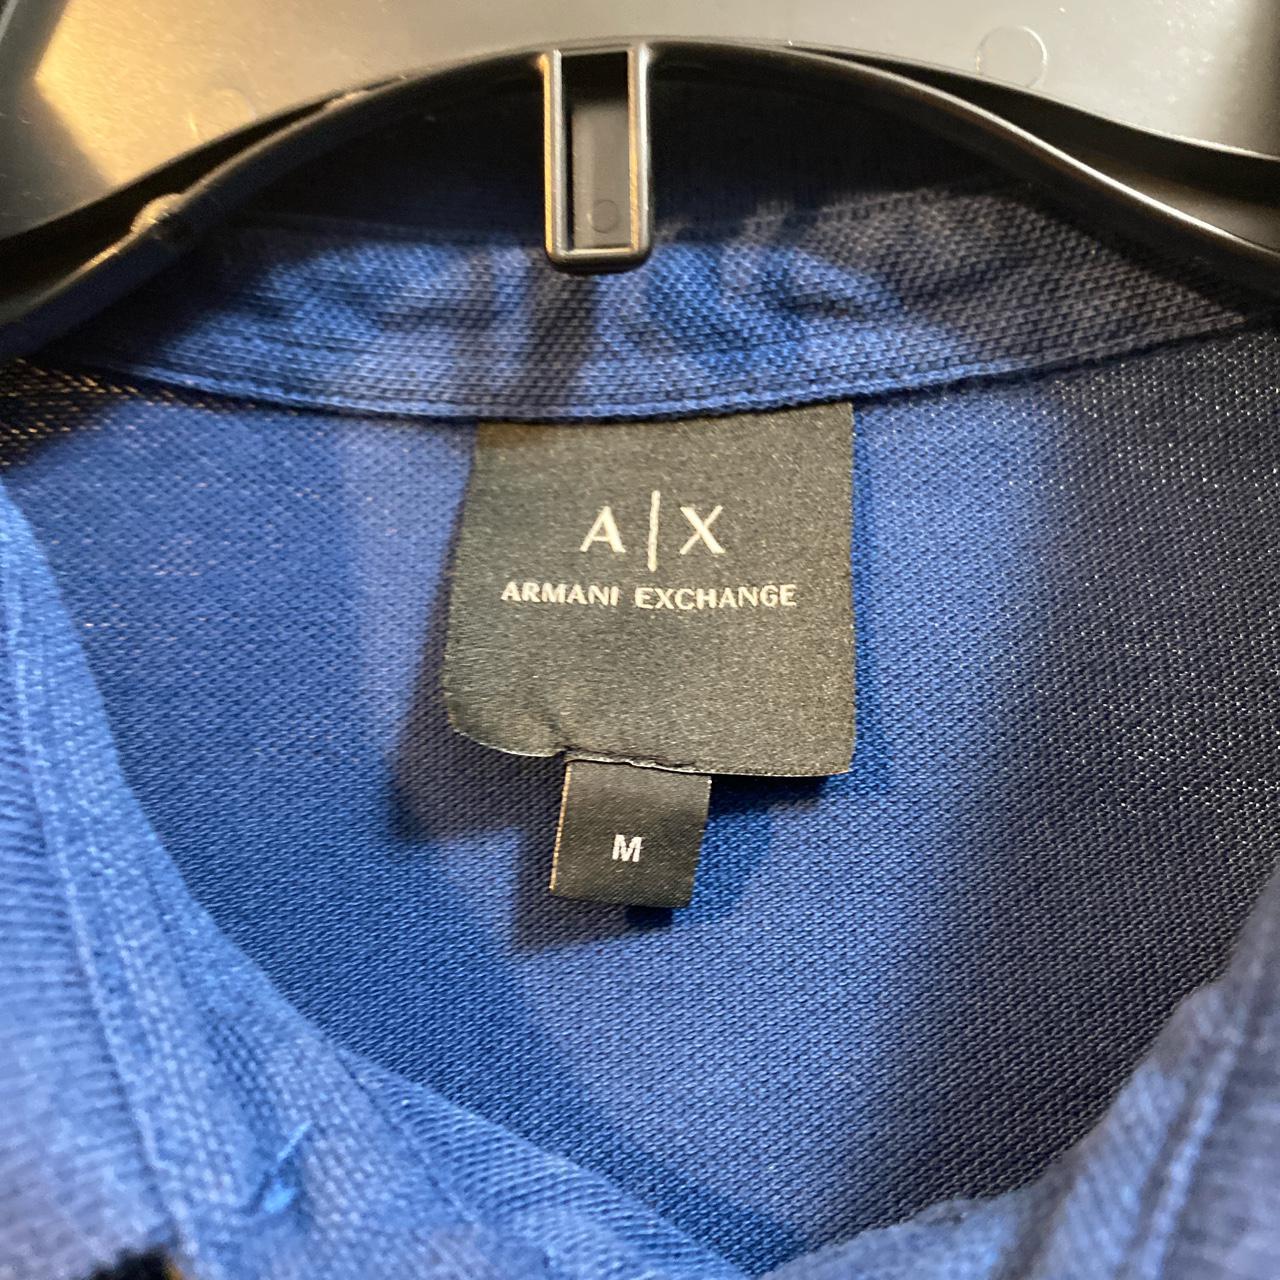 Armani exchange men’s polo shirt size... - Depop